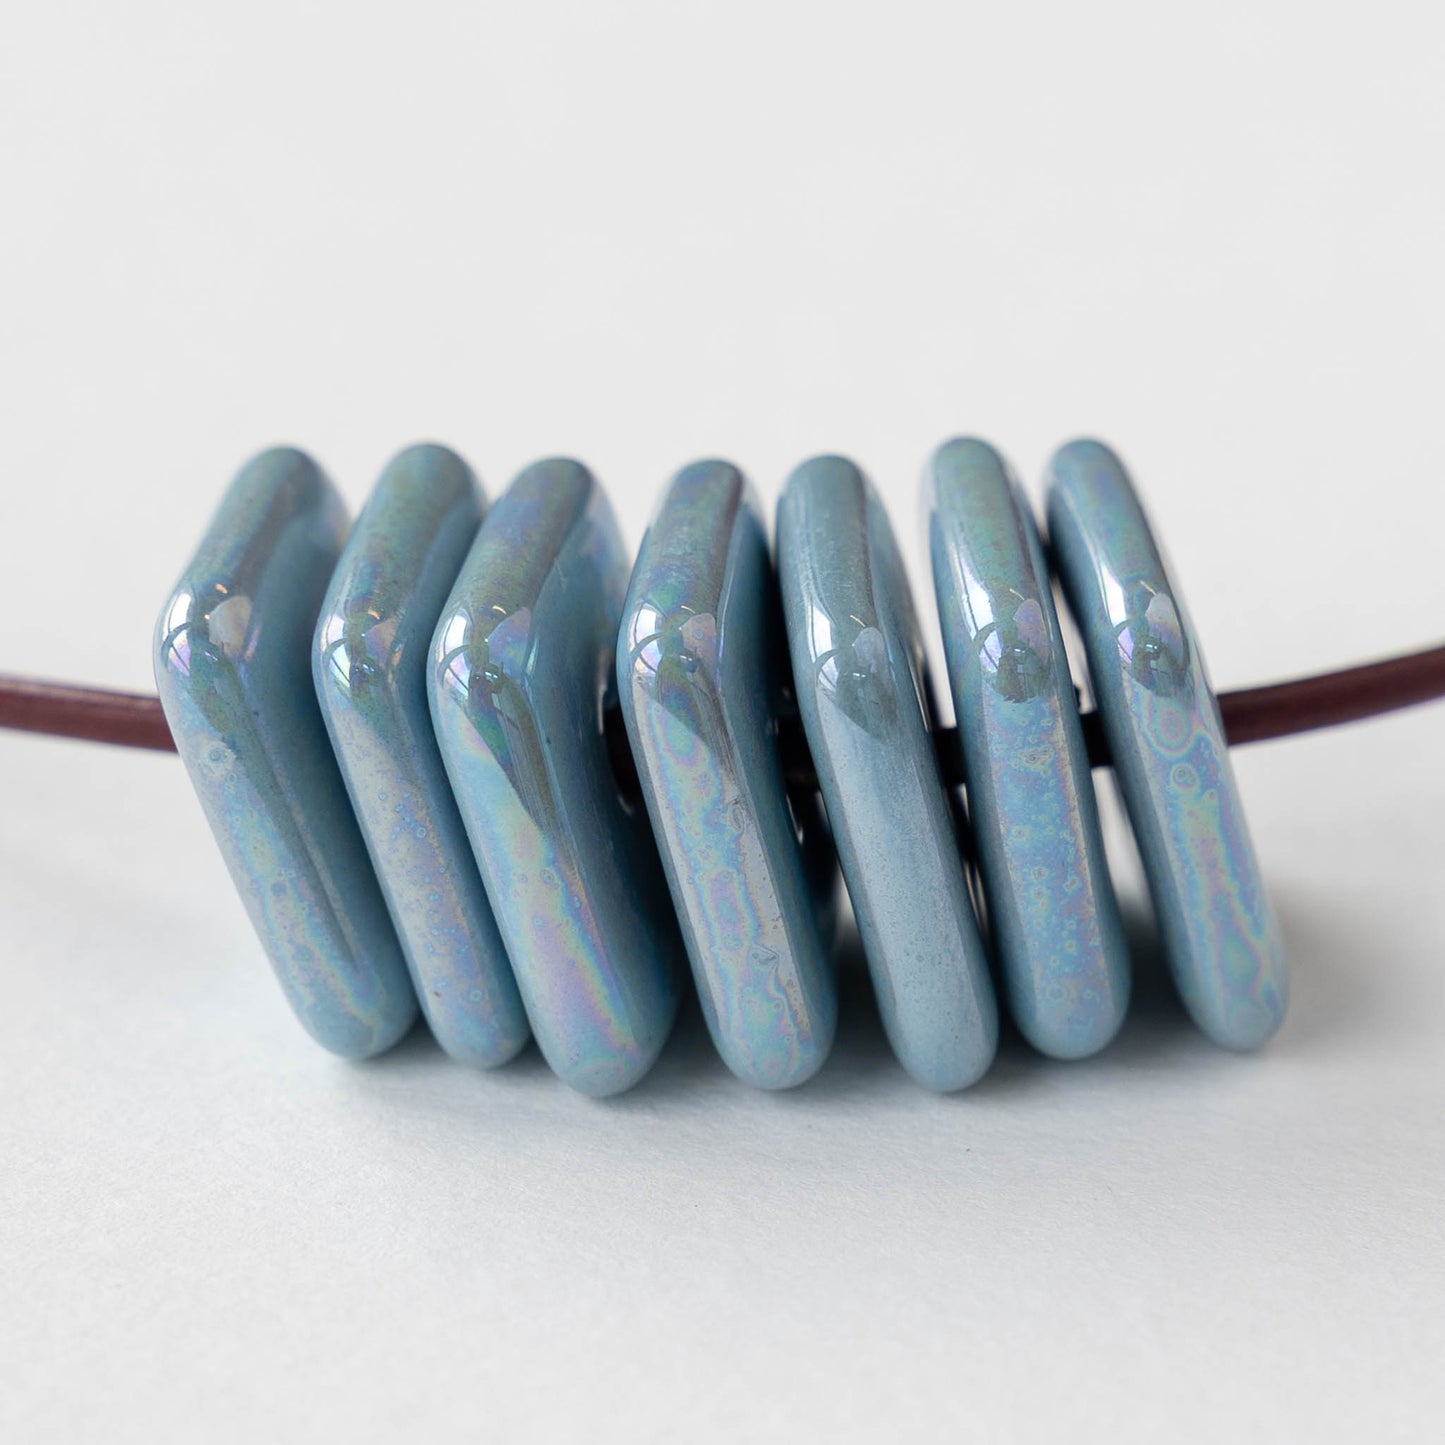 17mm Glazed Ceramic Square Tiles - Iridescent Light Blue - 10 beads